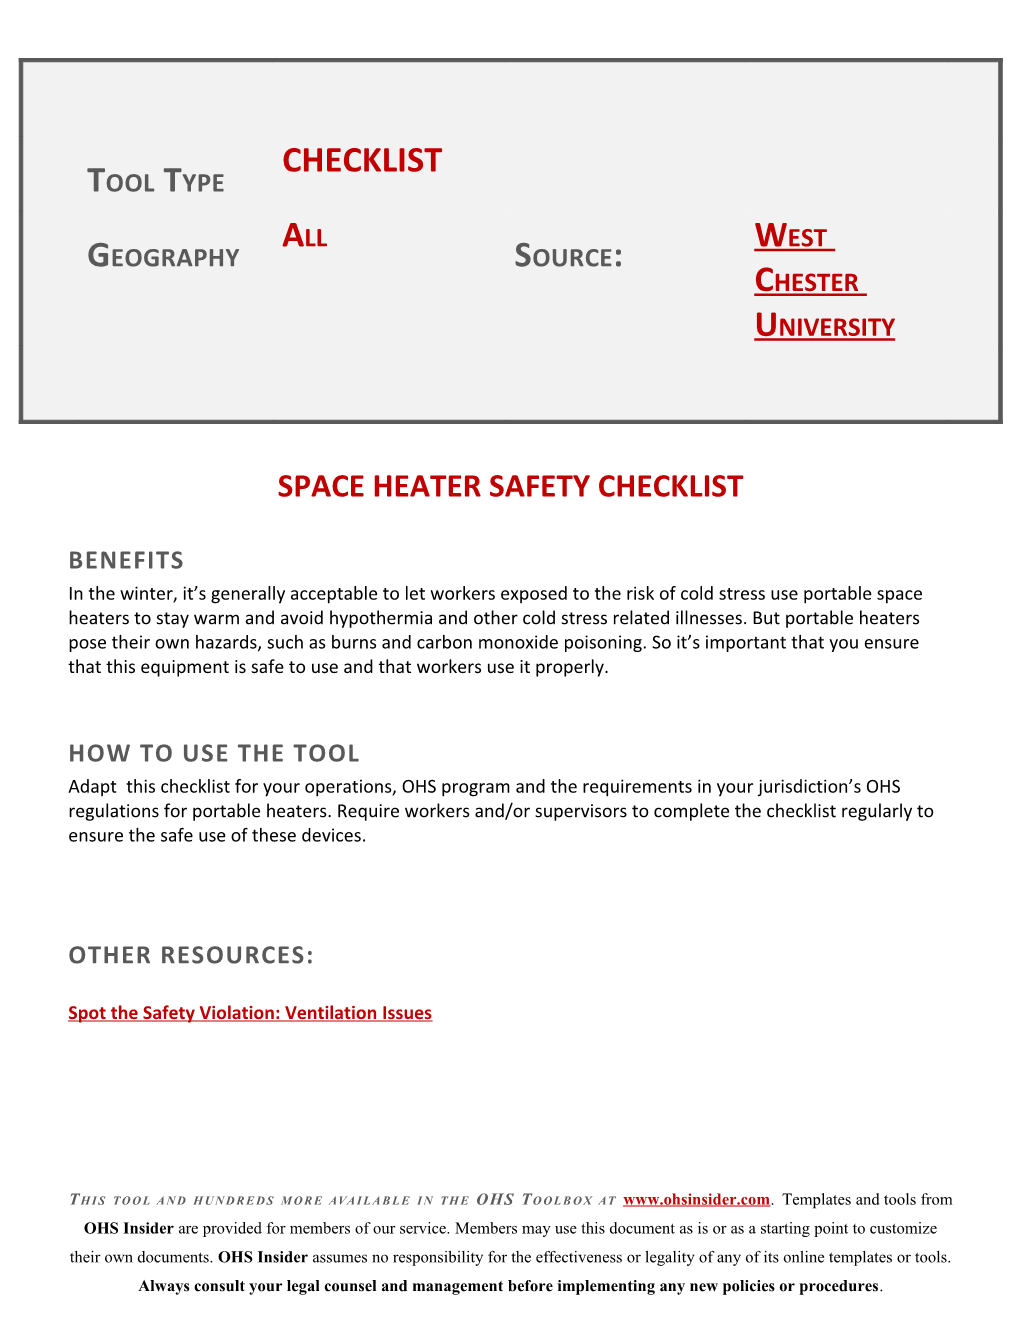 Space Heater Safety Checklist